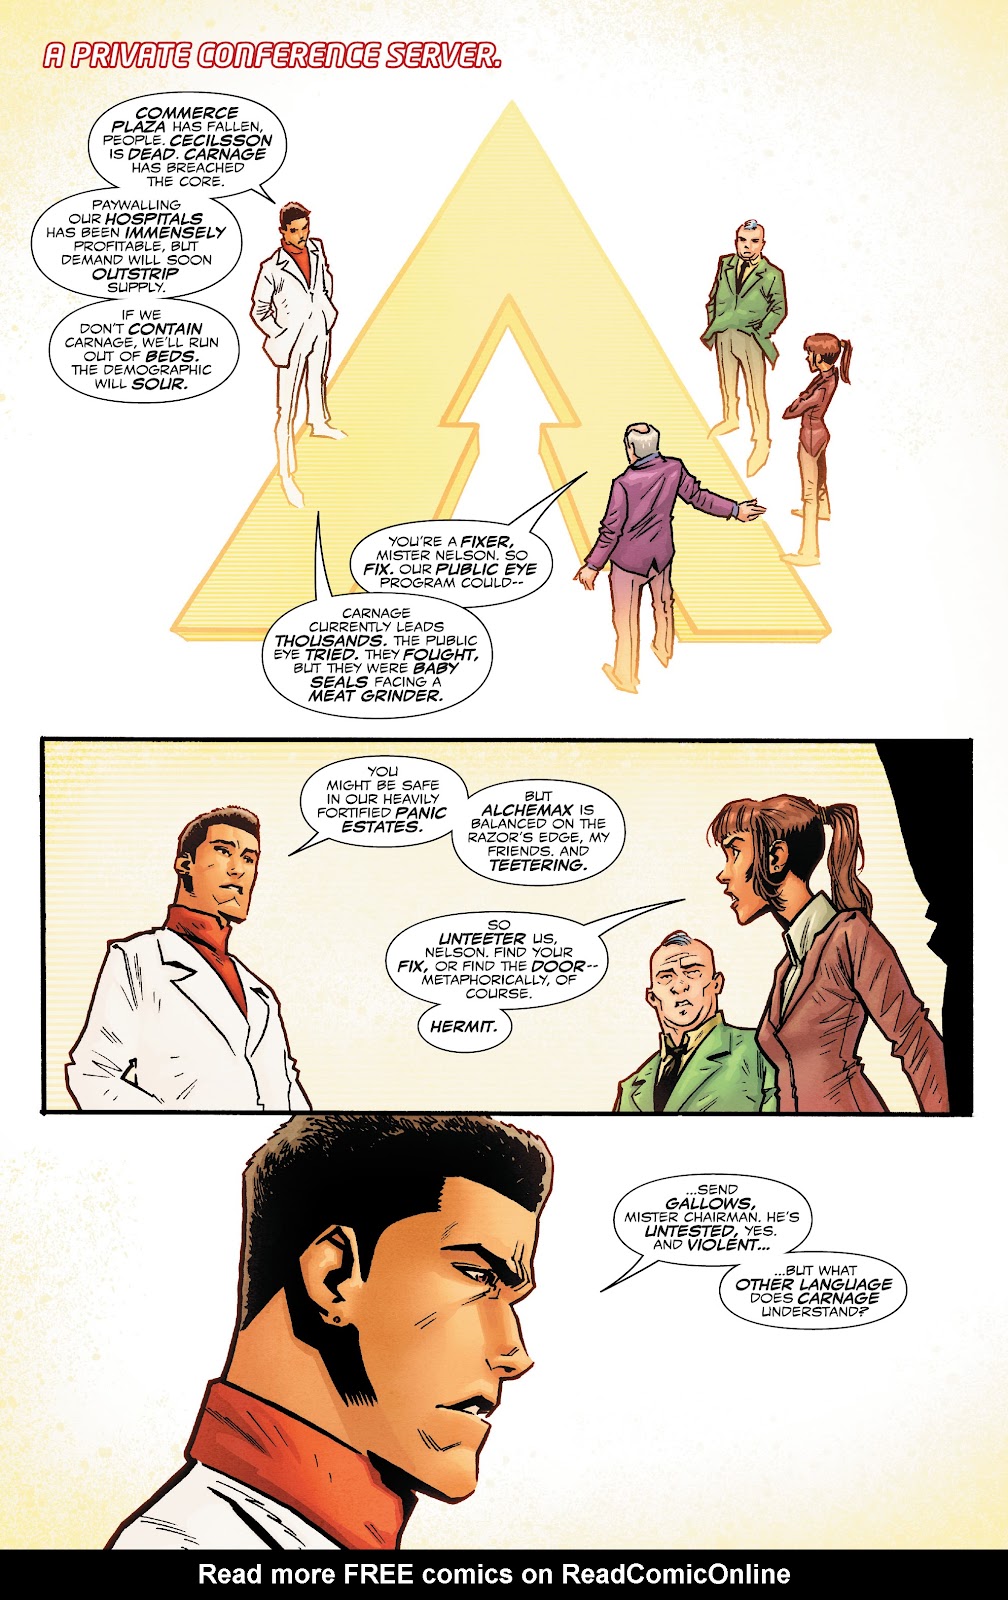 Spider-Man 2099: Dark Genesis issue 3 - Page 2